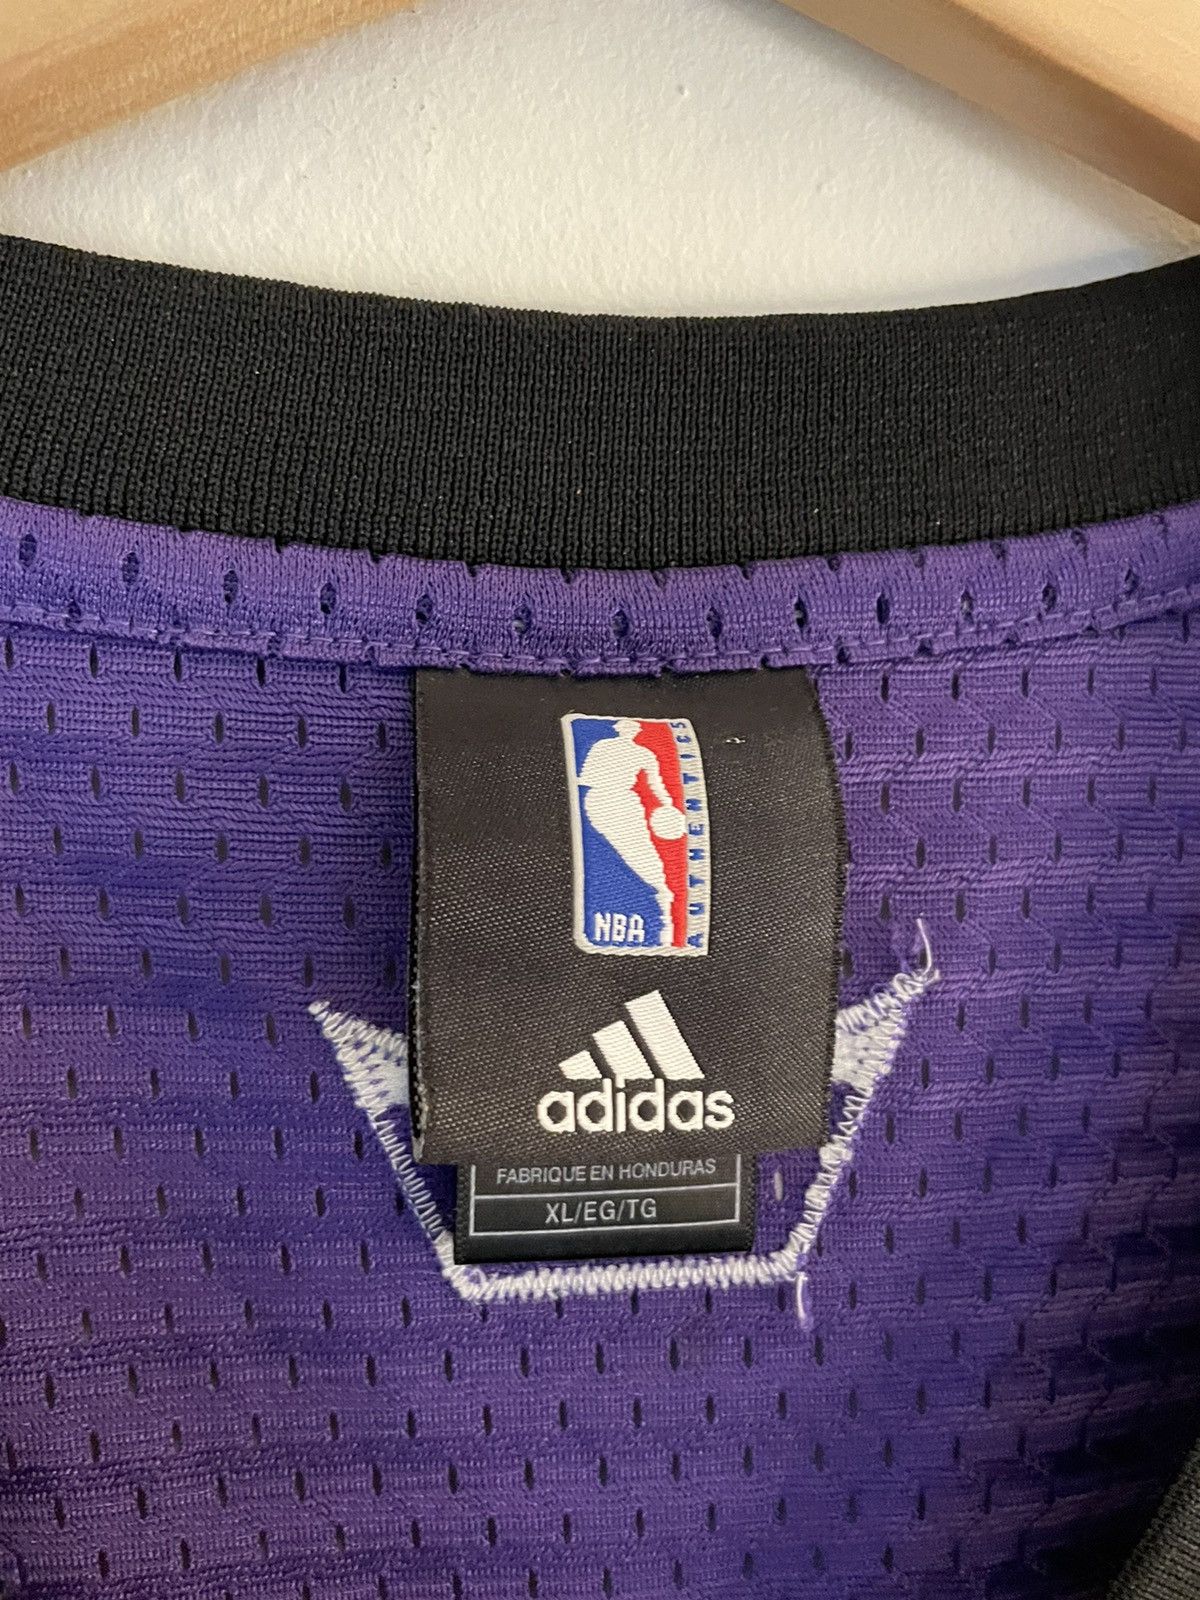 NBA Sacramento Kings Ron Artest Jersey Size US XL / EU 56 / 4 - 5 Preview